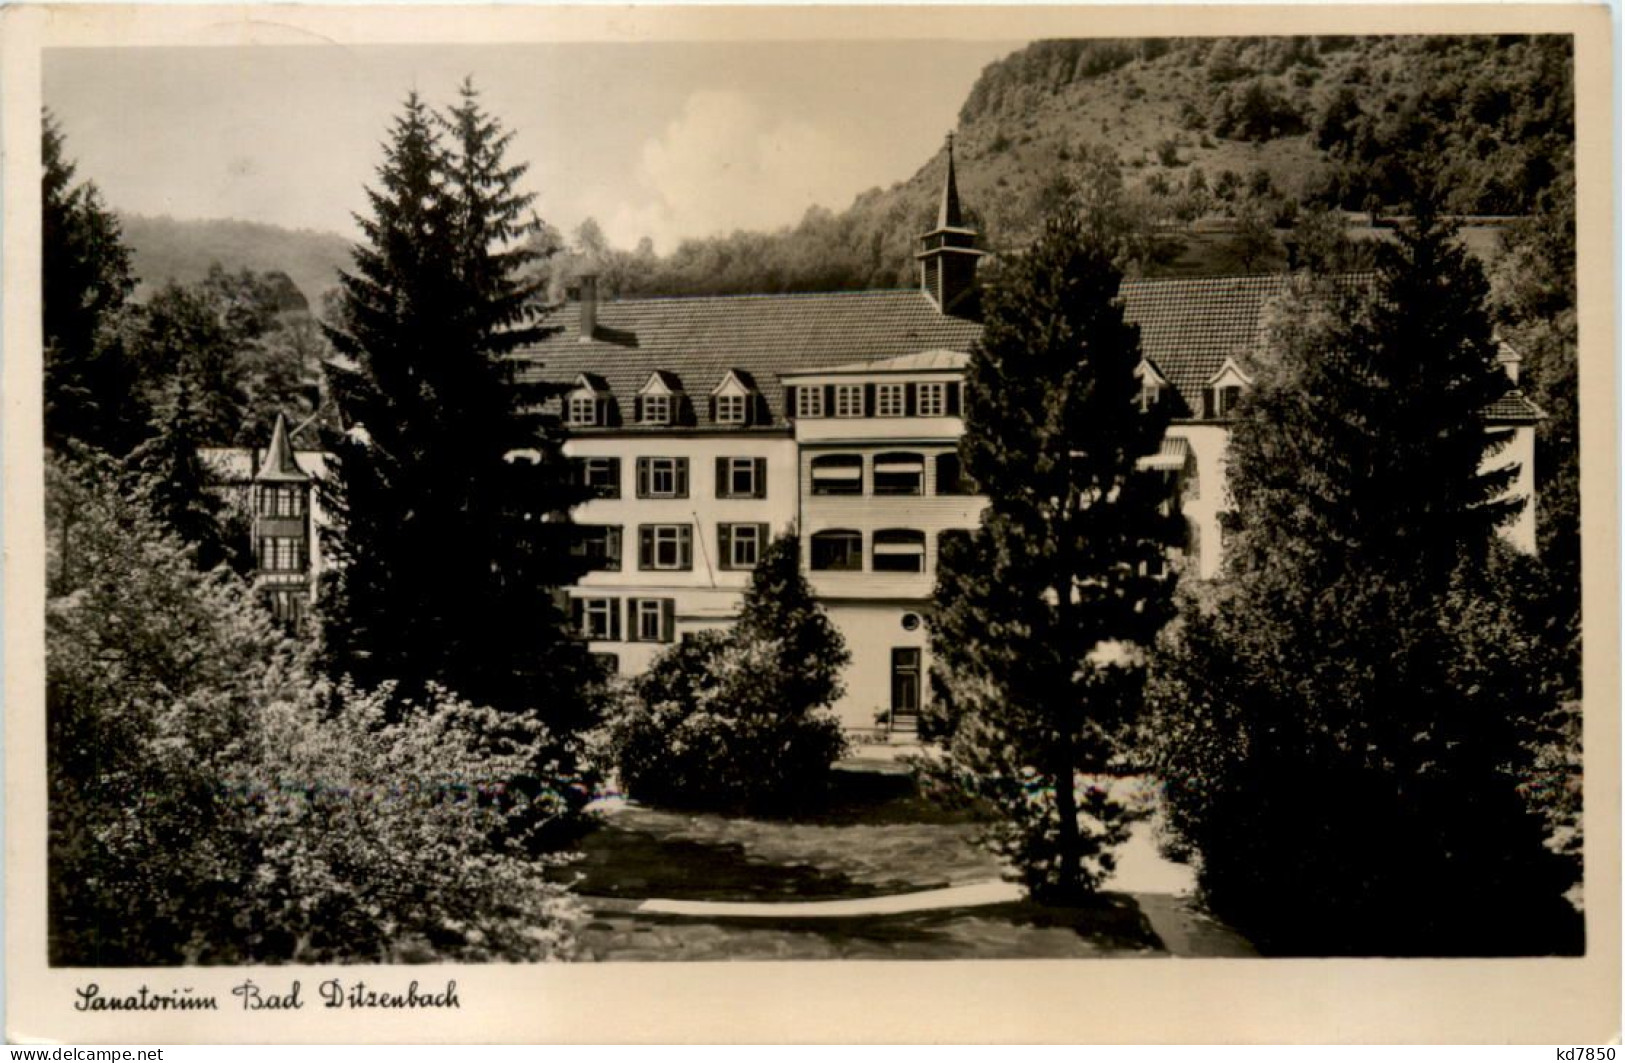 Bad Ditzenbach, Sanatorium - Goeppingen